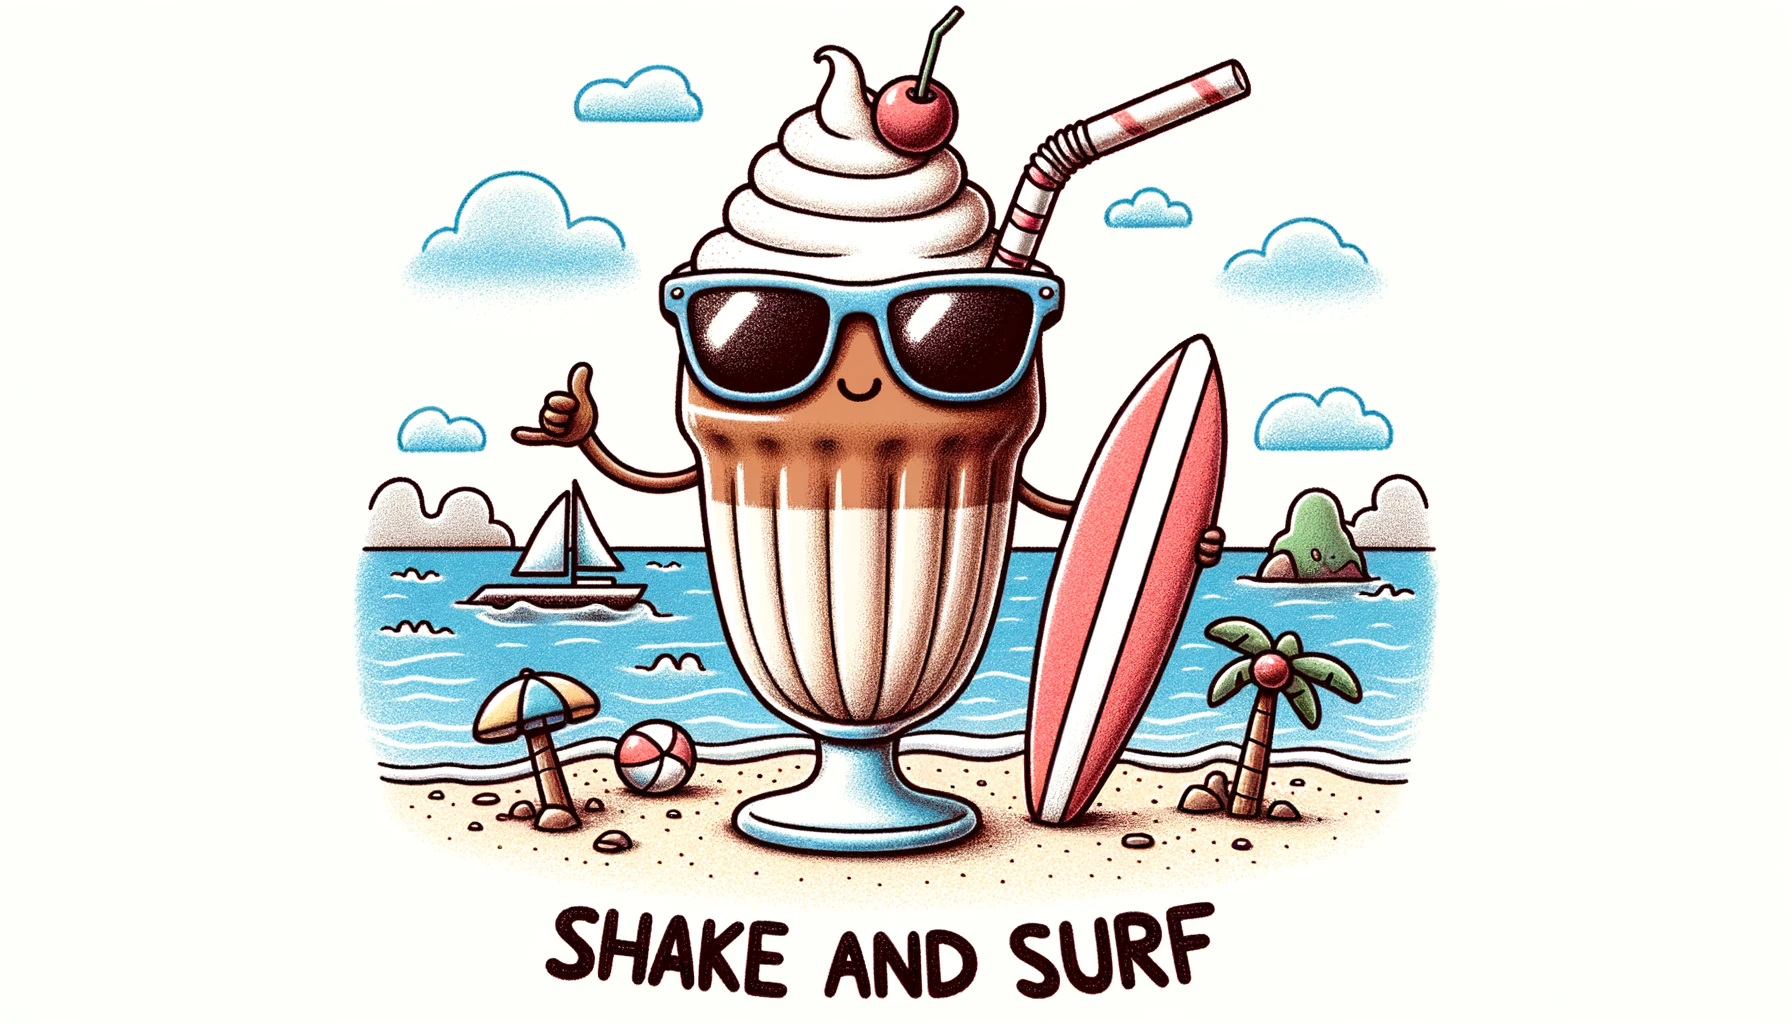 Shake and Surf - Milkshake Pun